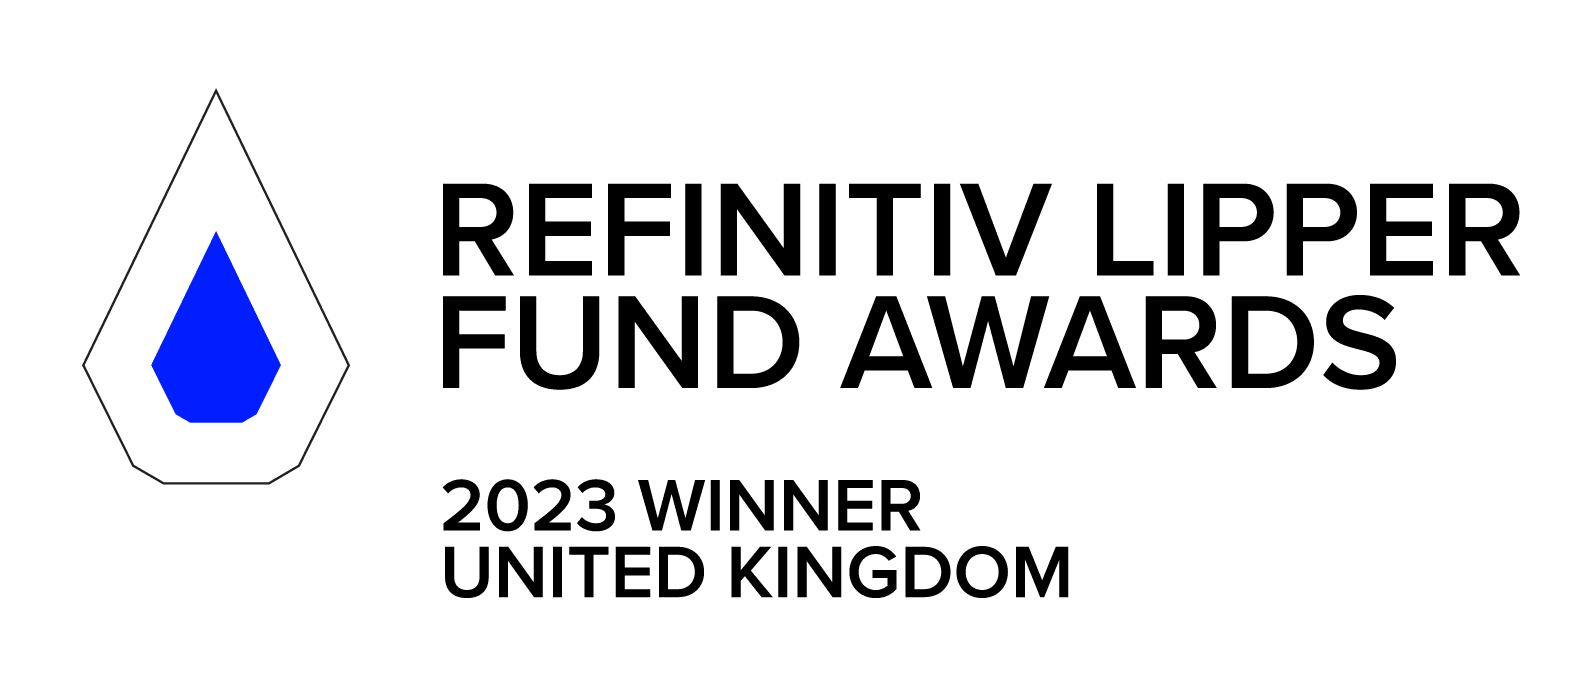 Lipper Awards 2023 winner UK